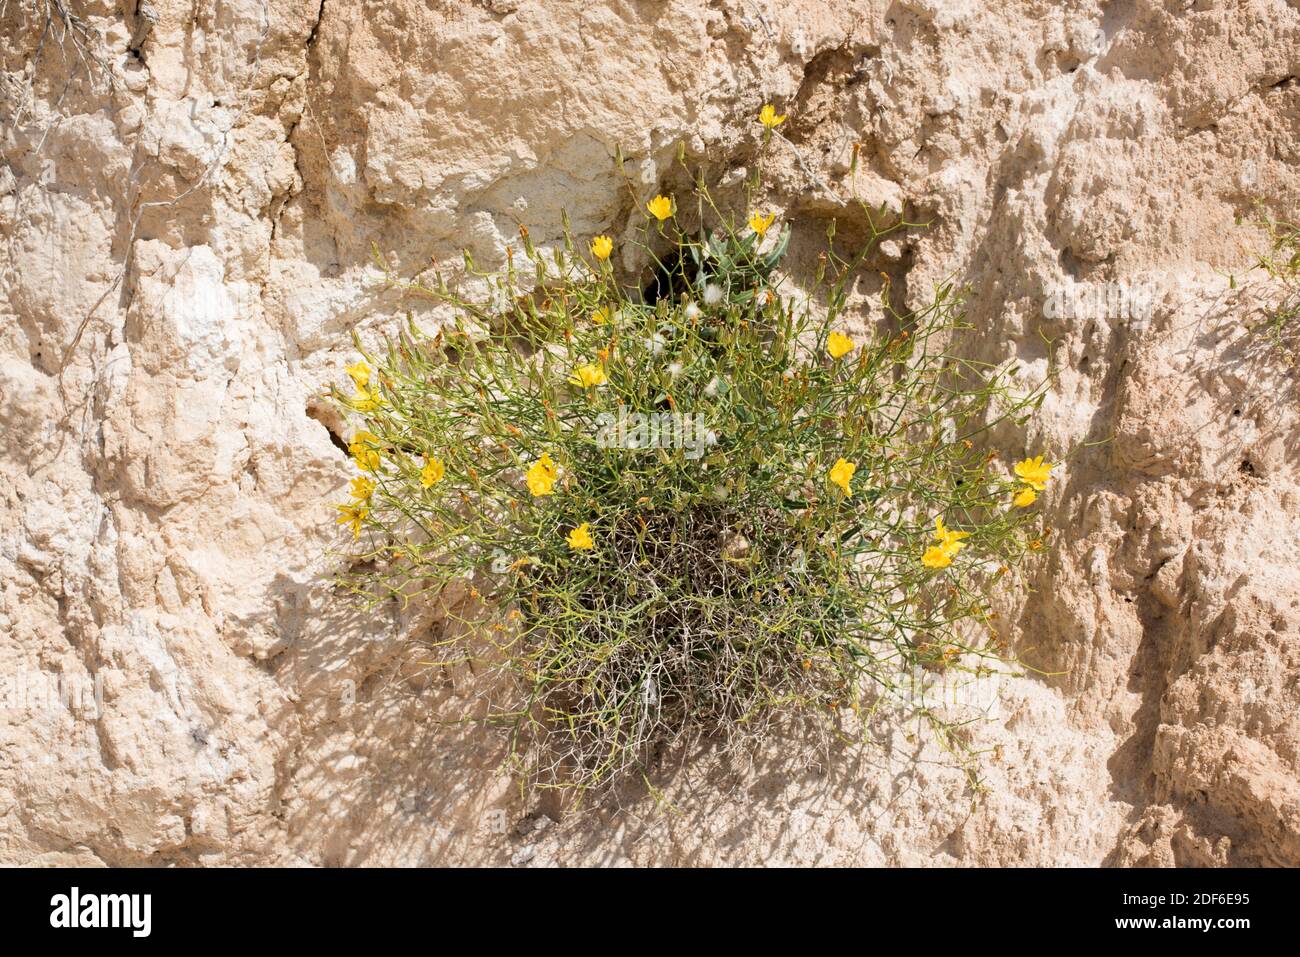 Launaea lanifera ist eine mehrjährige Pflanze, die im Südosten Spaniens, Nordafrika und der Arabischen Halbinsel endemisch ist. Plantae. Asteraceae. Dieses Foto wurde aufgenommen in Stockfoto